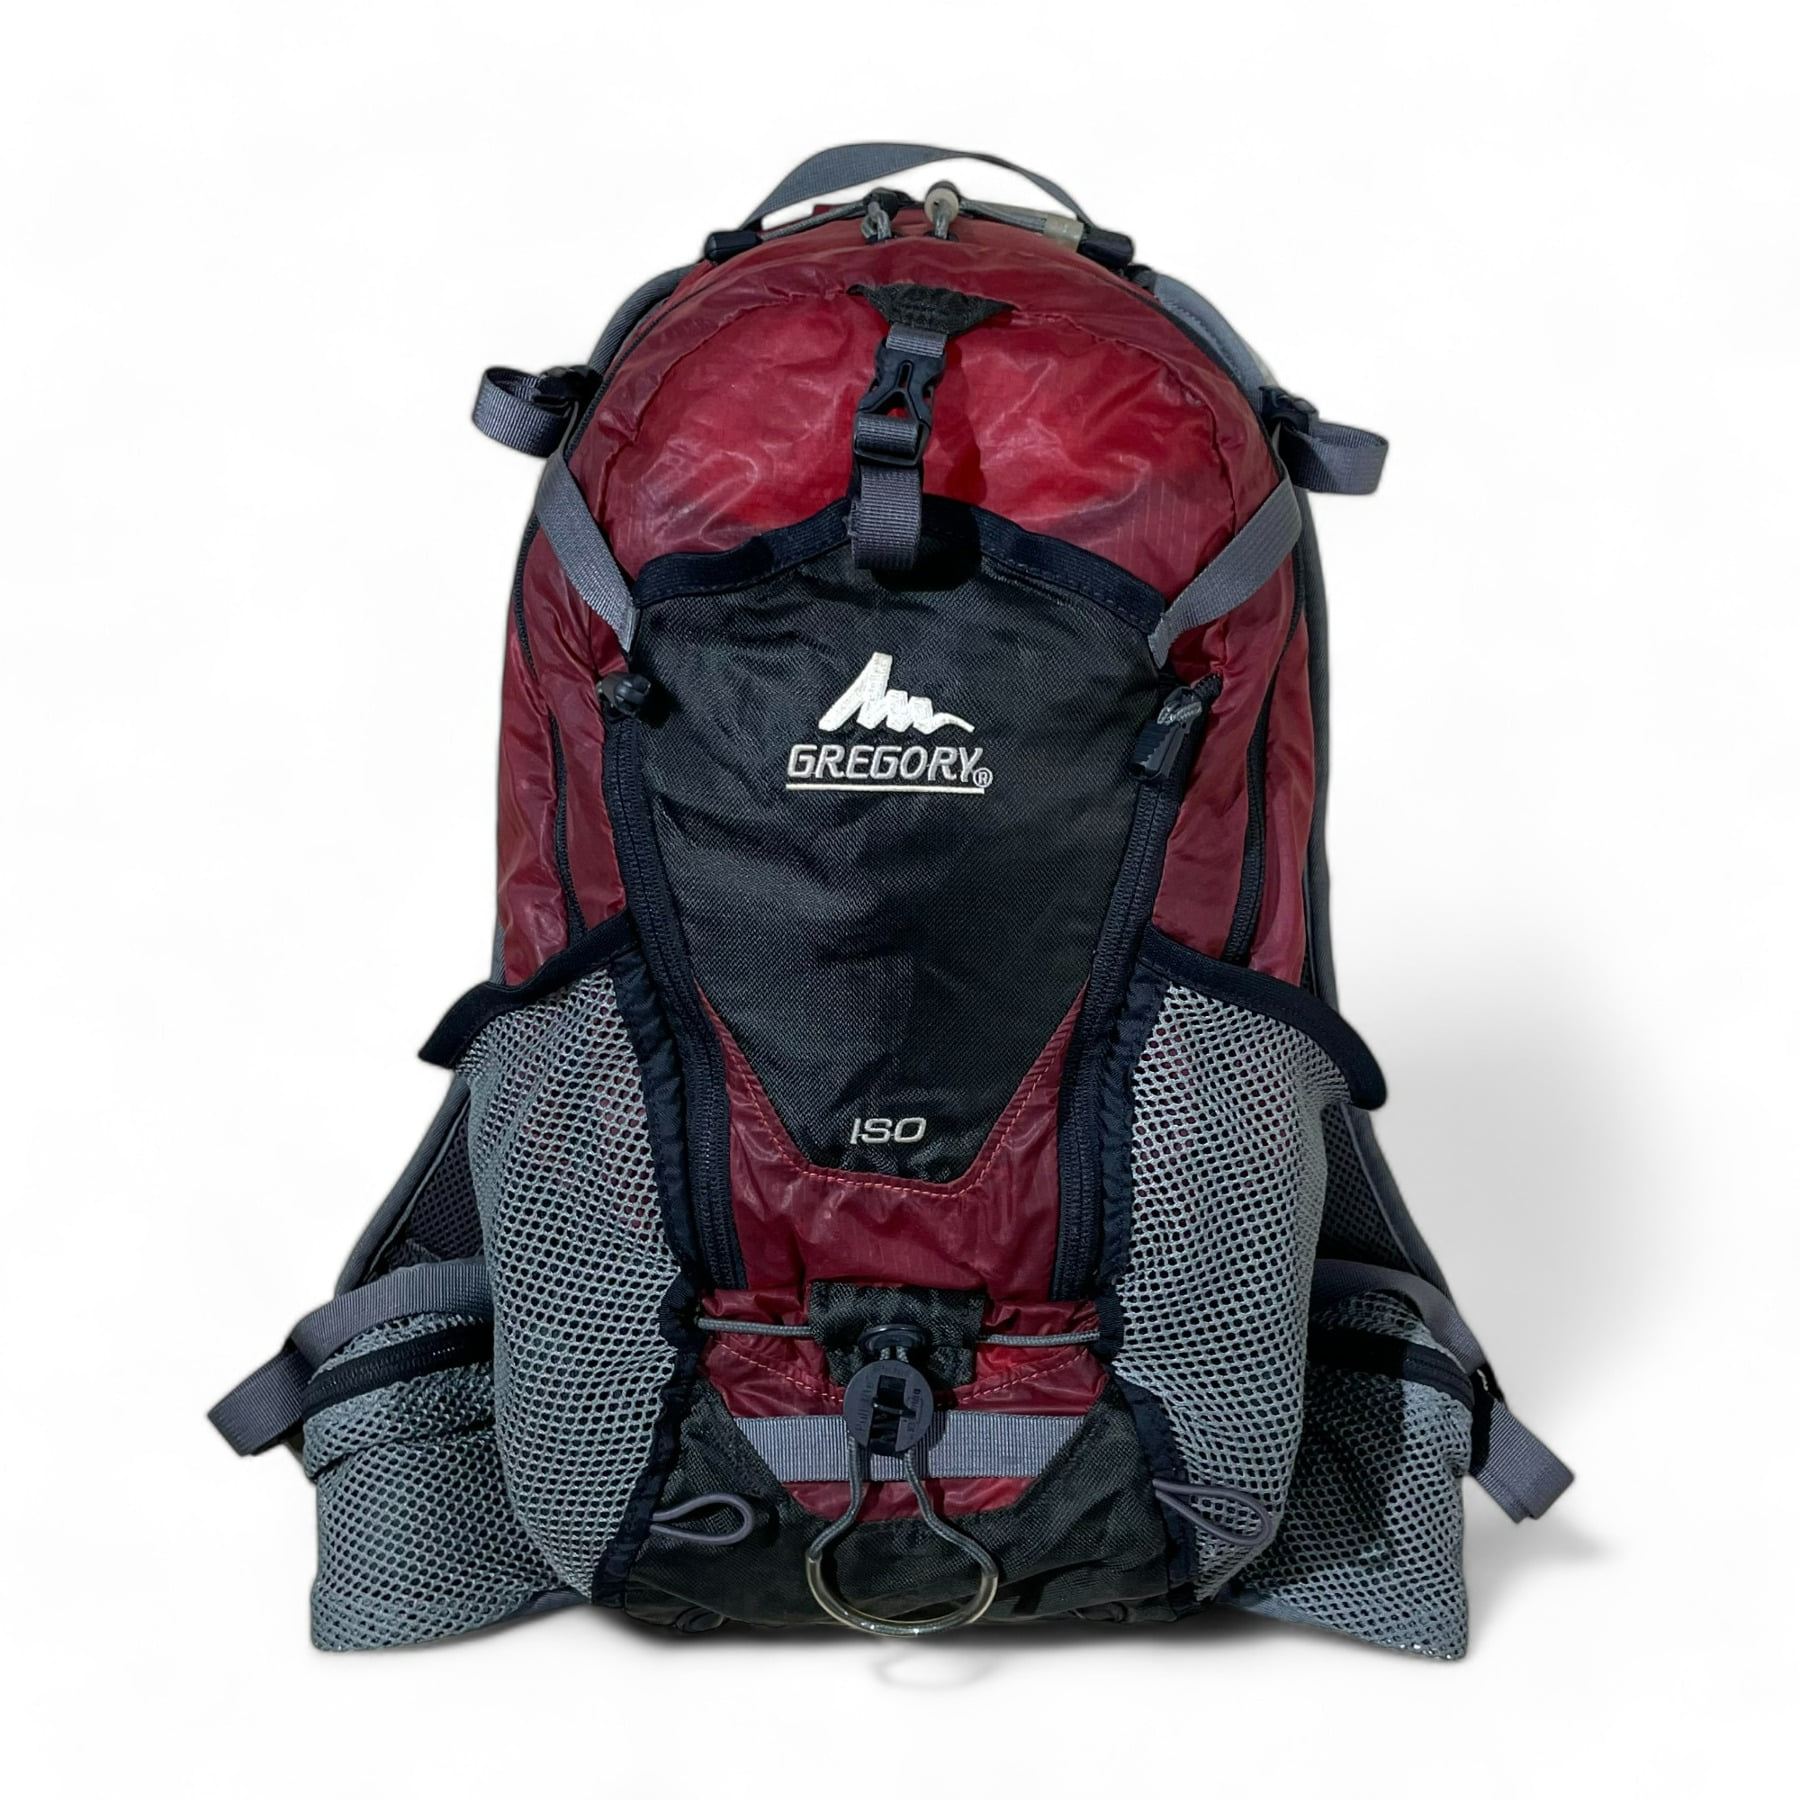 2007 Gregory ISO Backpack